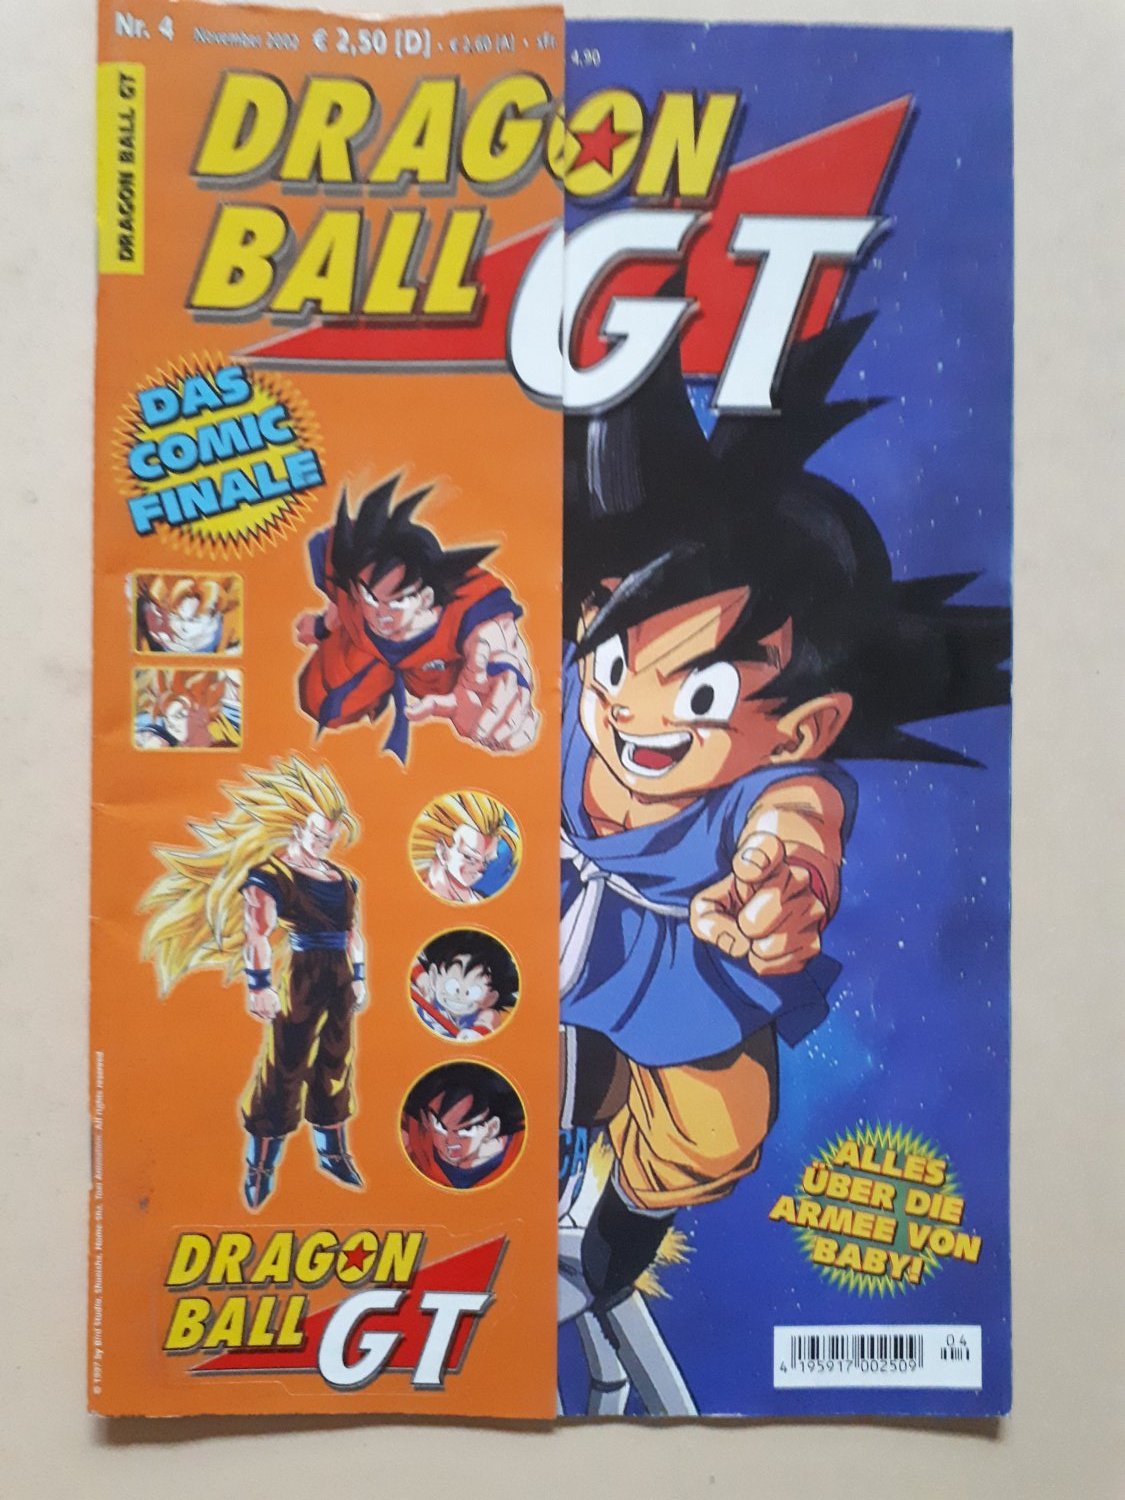 Dragonball gt manga deutsch